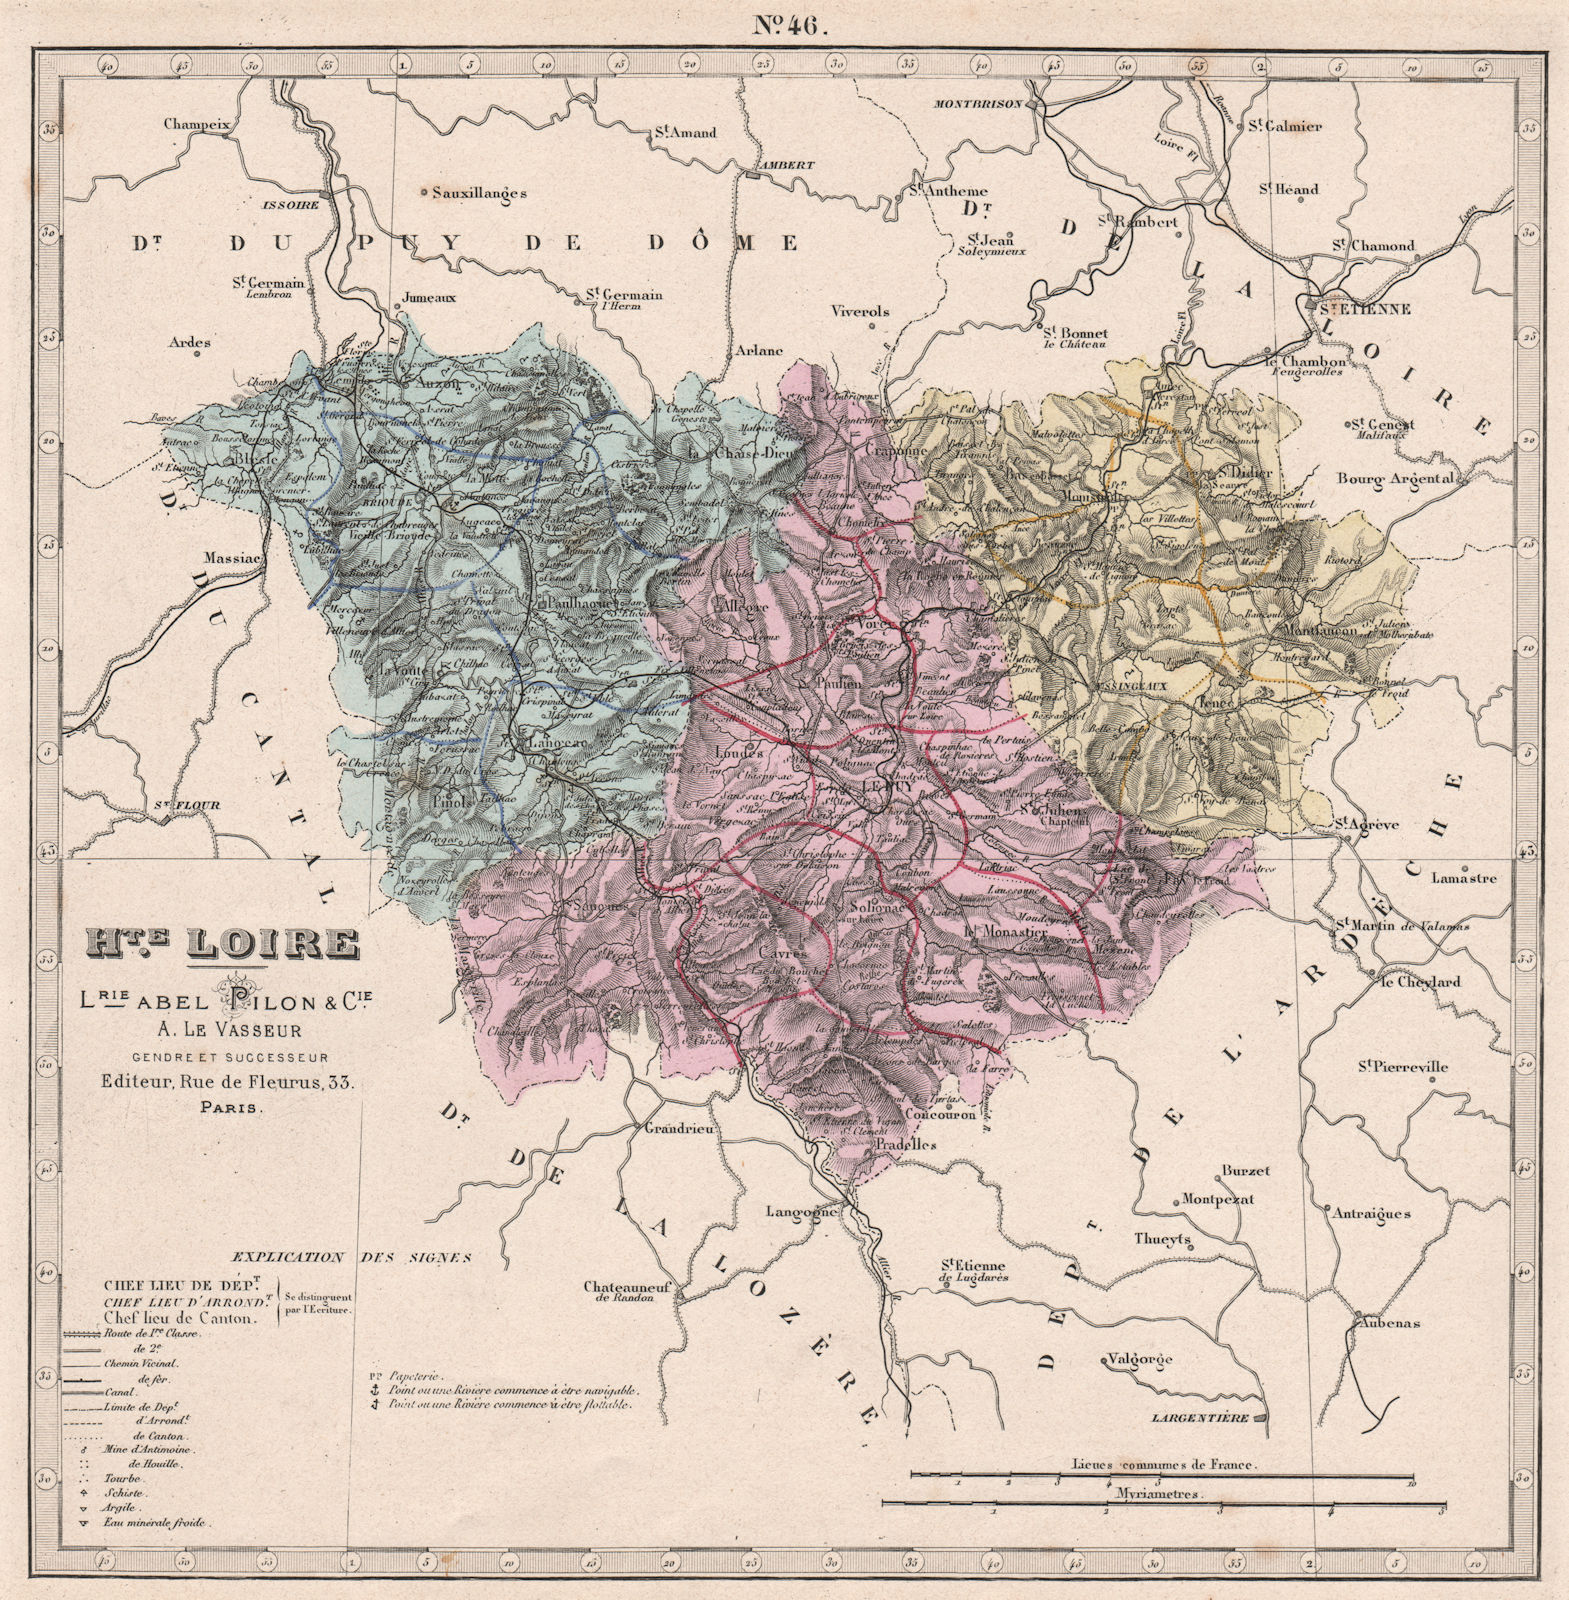 HAUTE-LOIRE department showing resources & minerals. LE VASSEUR 1876 old map